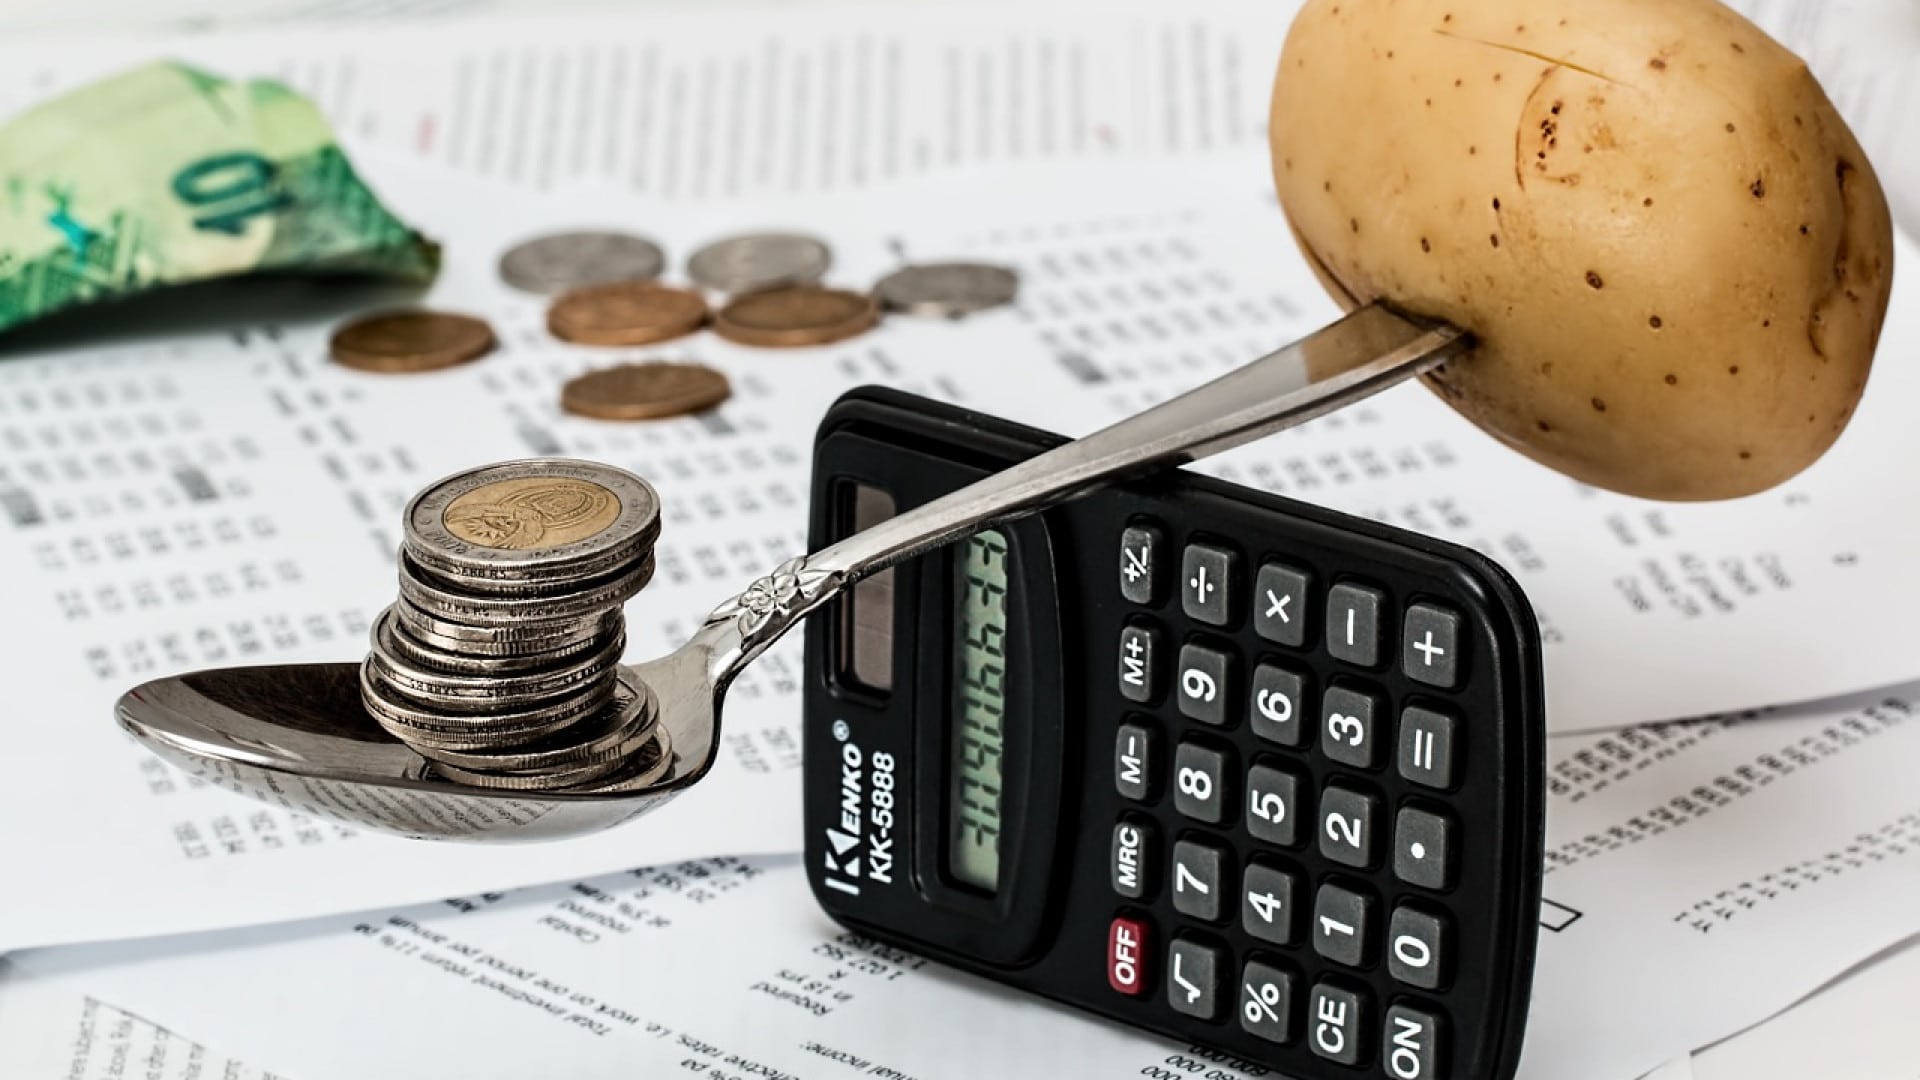 Une pomme de terre et des pièces en équilibre sur une cuillère au-dessus d'une calculatrice, symbolisant la budgétisation financière ou la comparaison des prix.